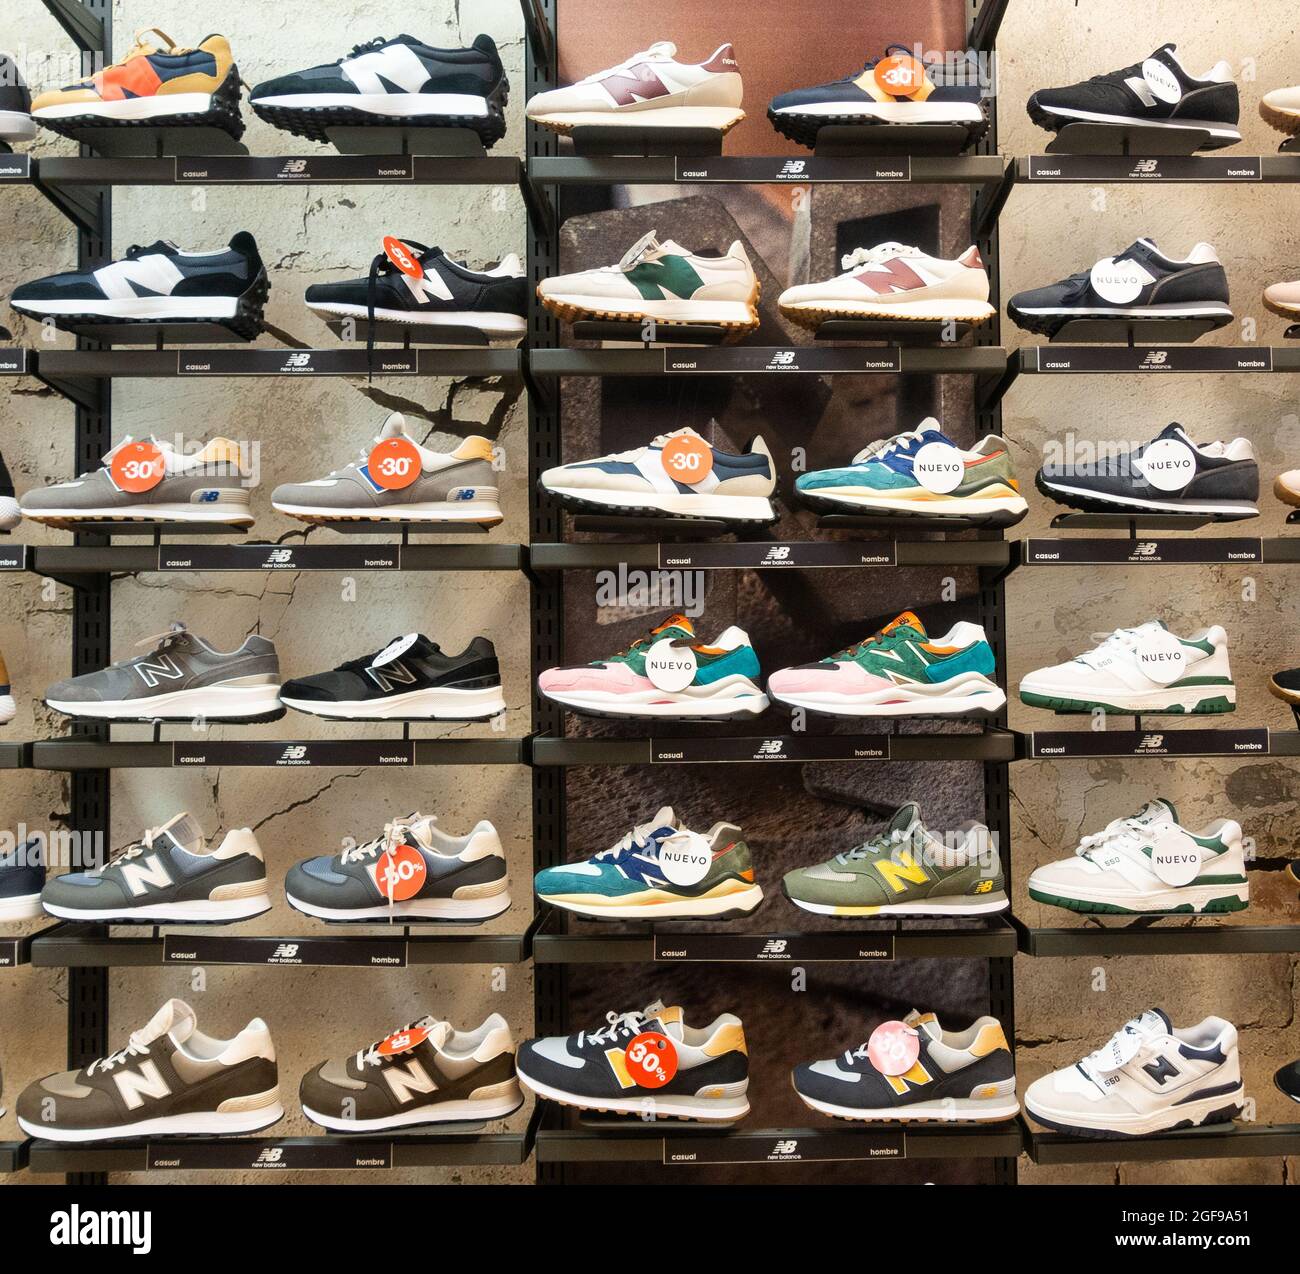 Chaussures New Balance, chaussures d'entraînement, chaussures dans un magasin de sport. Banque D'Images